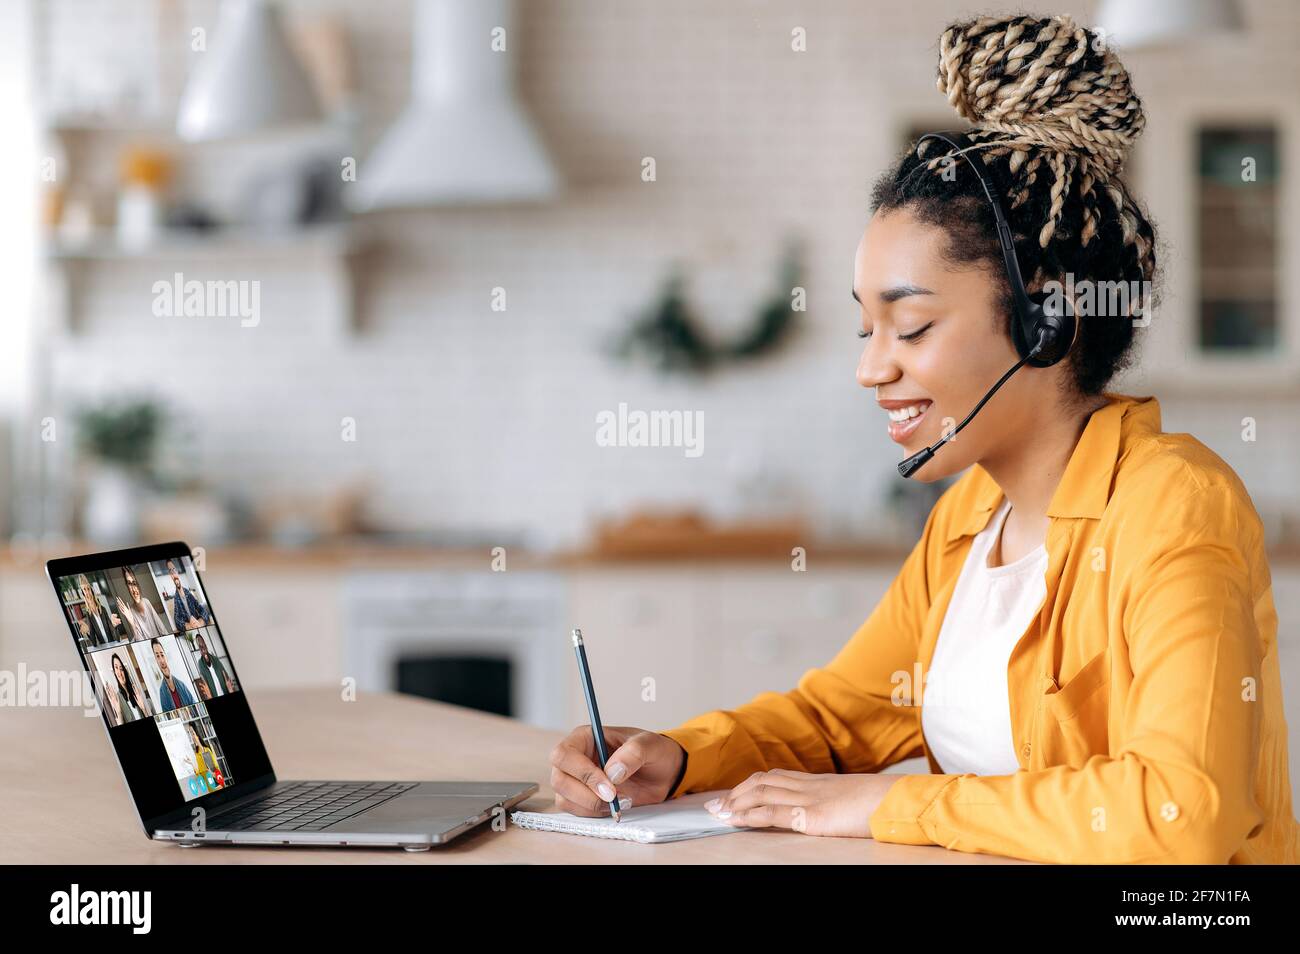 Happy African American studentessa ascolta una lezione online utilizzando un laptop e una cuffia, prende appunti, studia da remoto, l'insegnante e gli altri studenti sono sullo schermo del portatile. E-learning Foto Stock